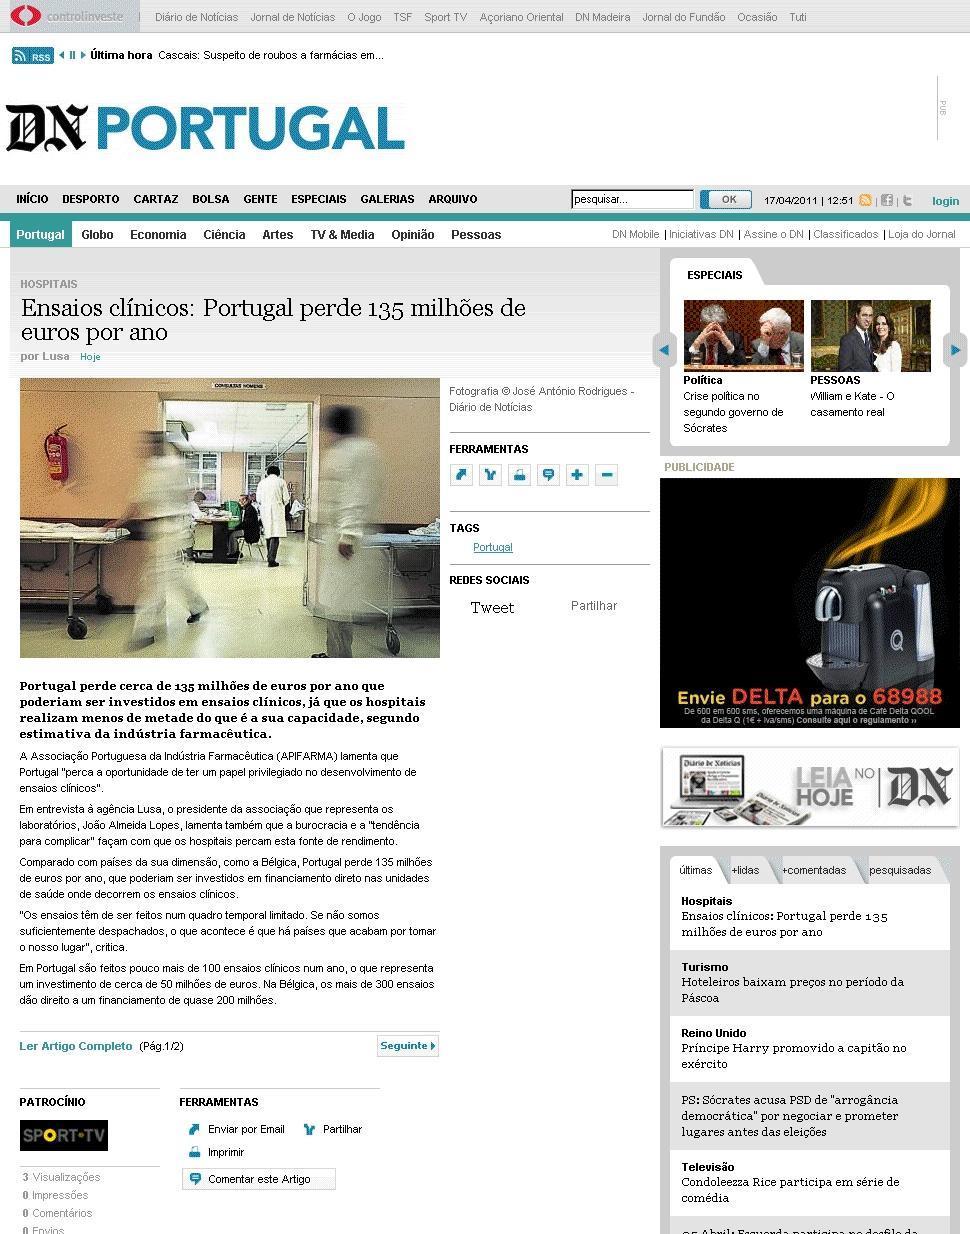 Data: 2011/04/17 Diário de Notícias Título: Ensaios clínicos: Portugal perde 135 milhões de euros